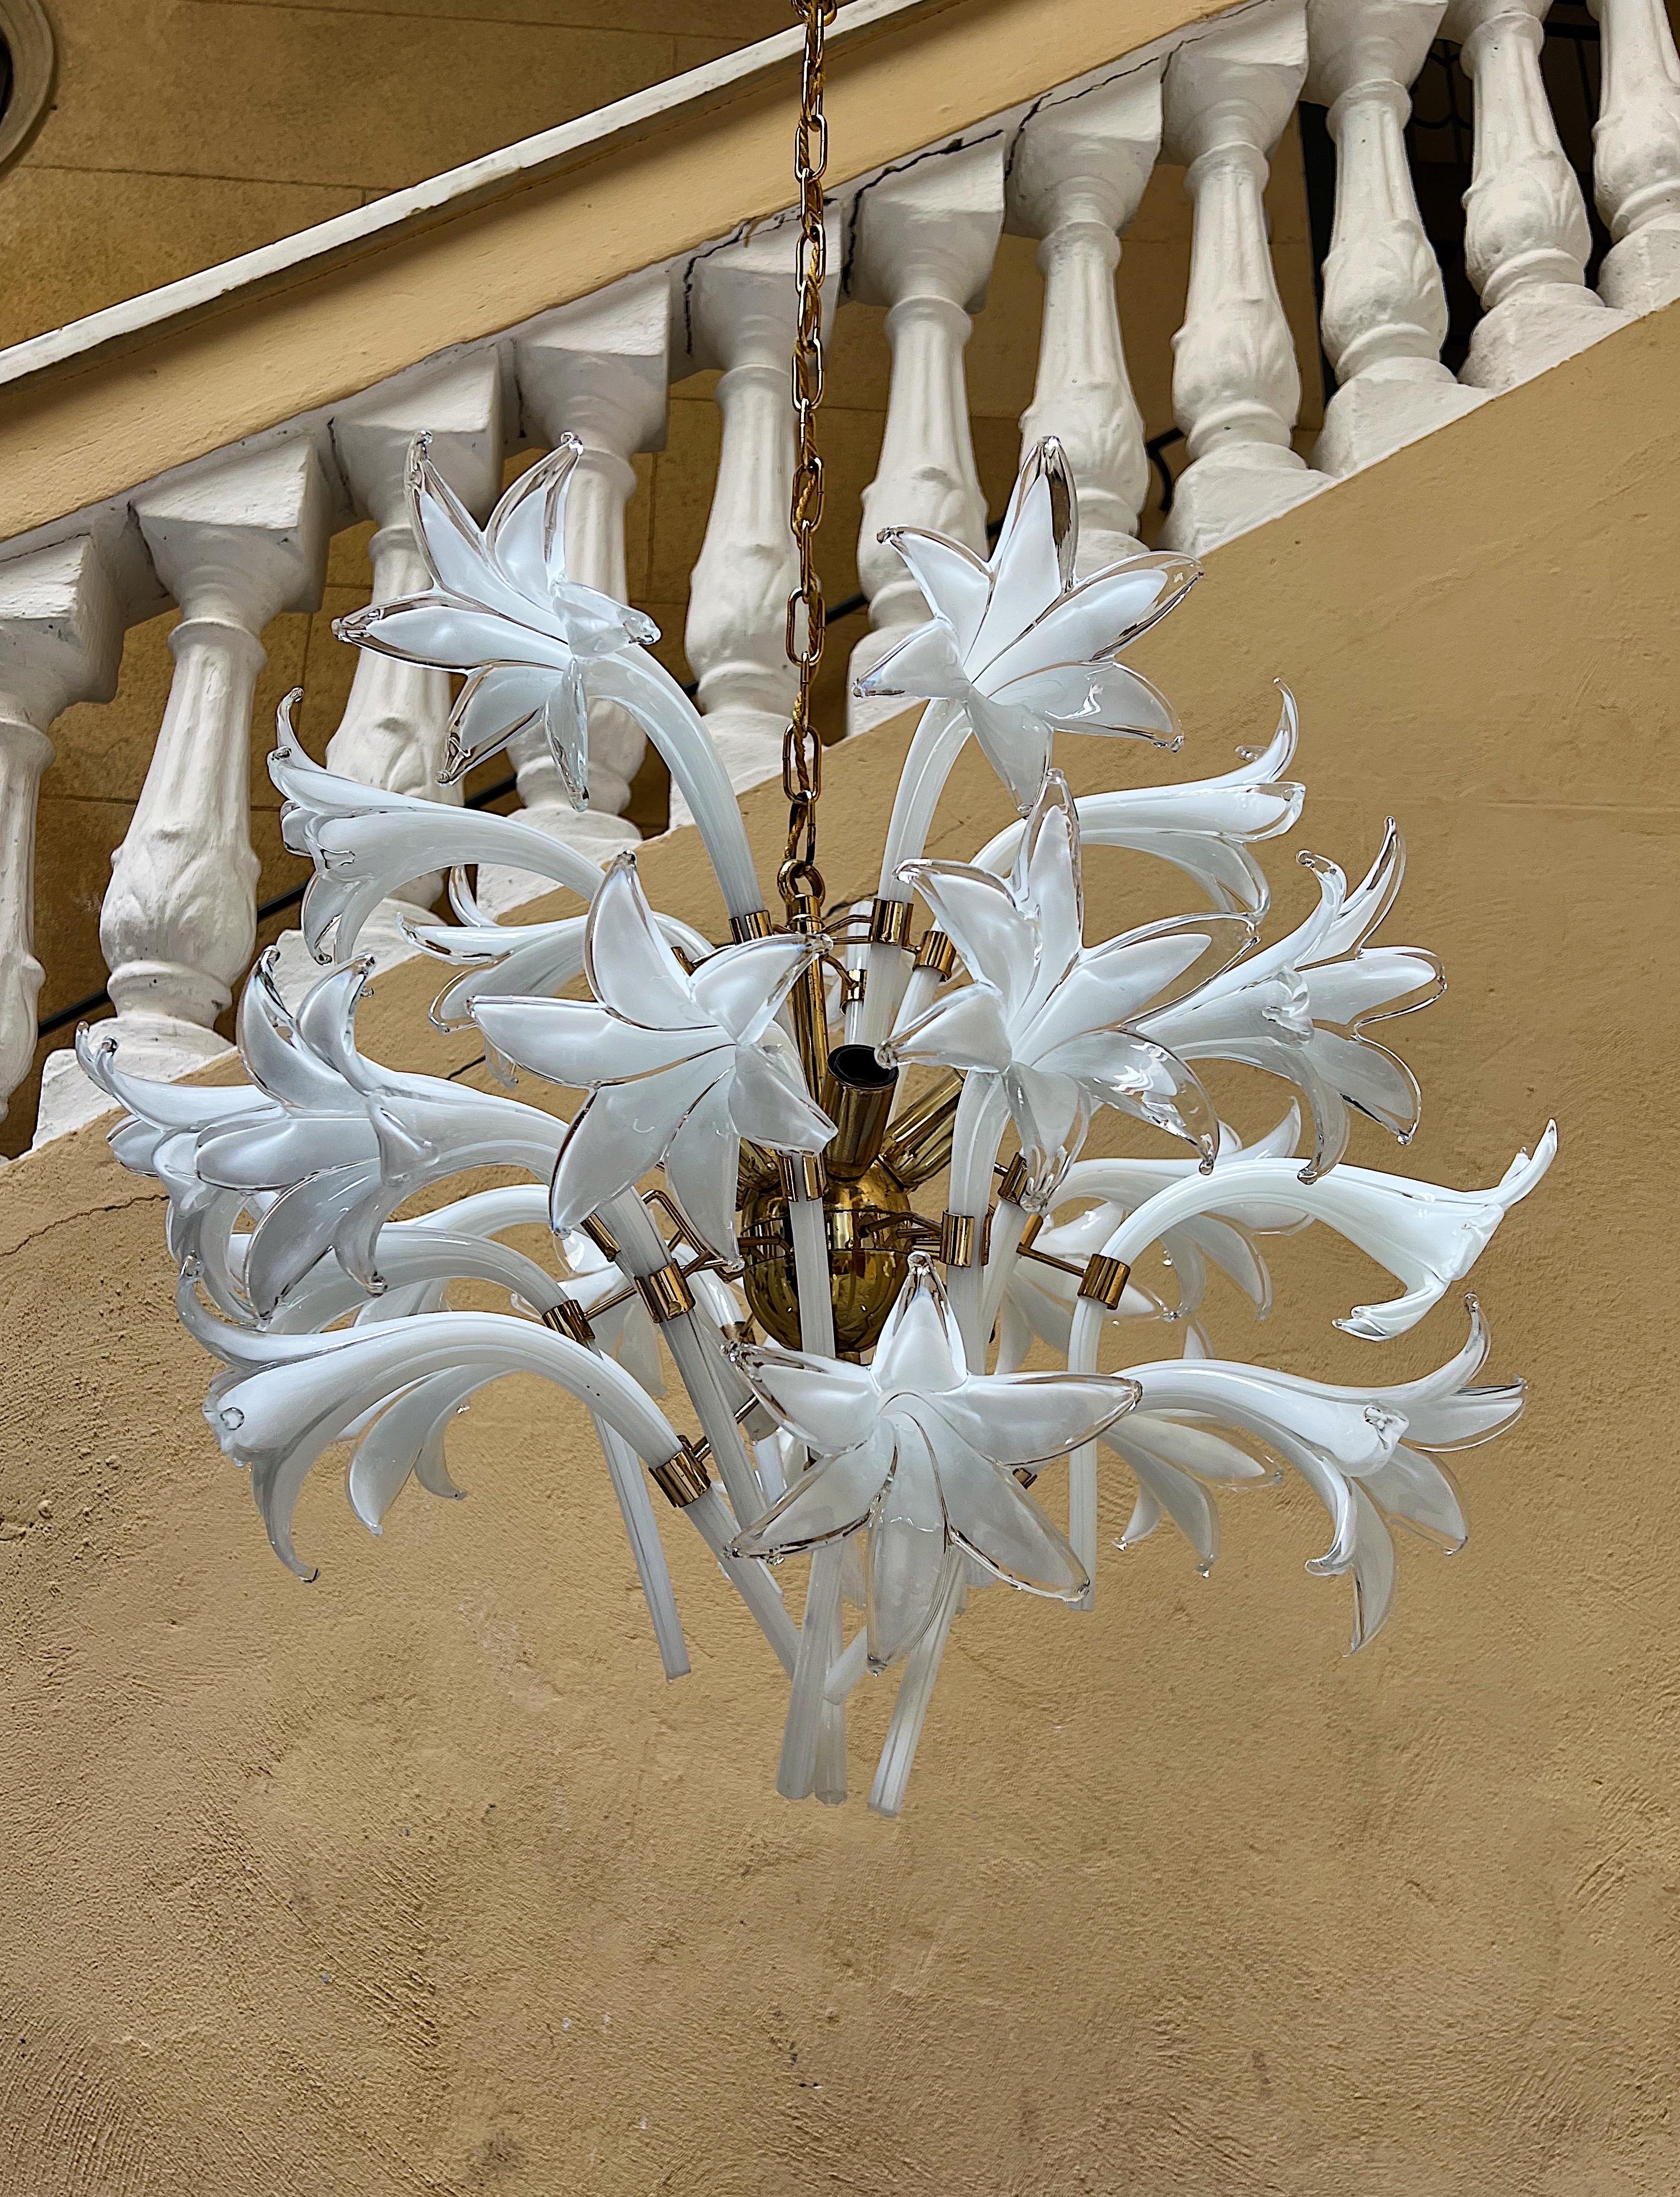 Seltener Kronleuchter aus Murano-Glas, entworfen von Franco Luce in den 1970er Jahren.
Die Leuchte besteht aus einem goldenen Metallsockel mit weißen Blumen.

Die hohe handwerkliche Qualität macht dieses Stück zu einem wertvollen